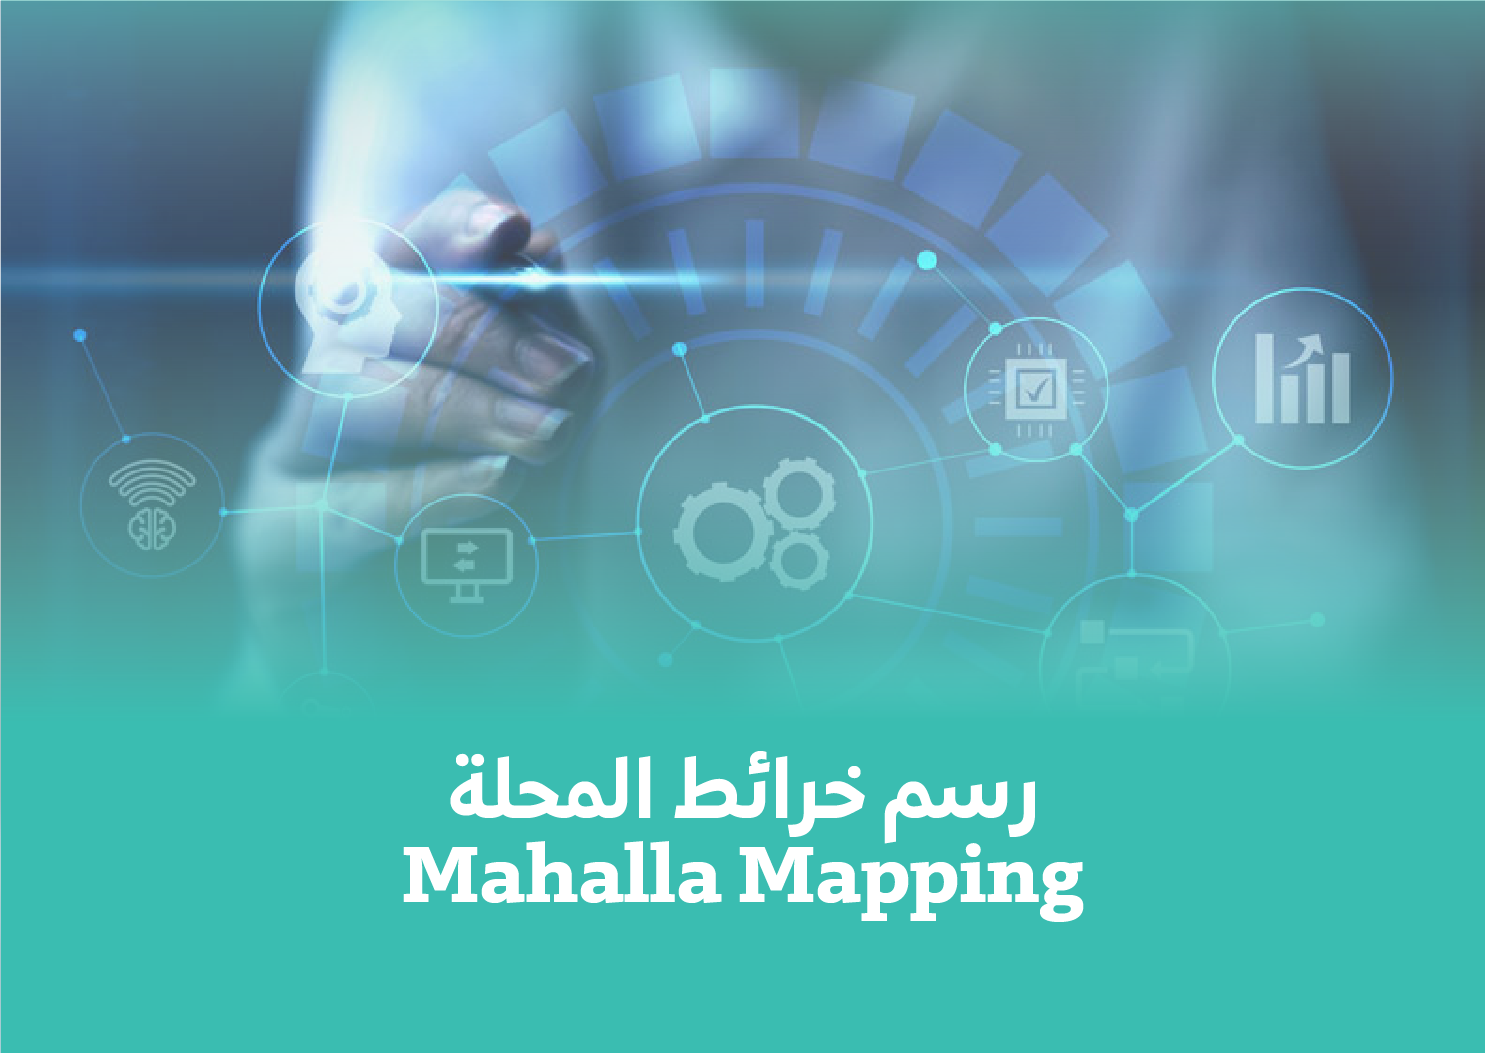 Mahalla Mapping